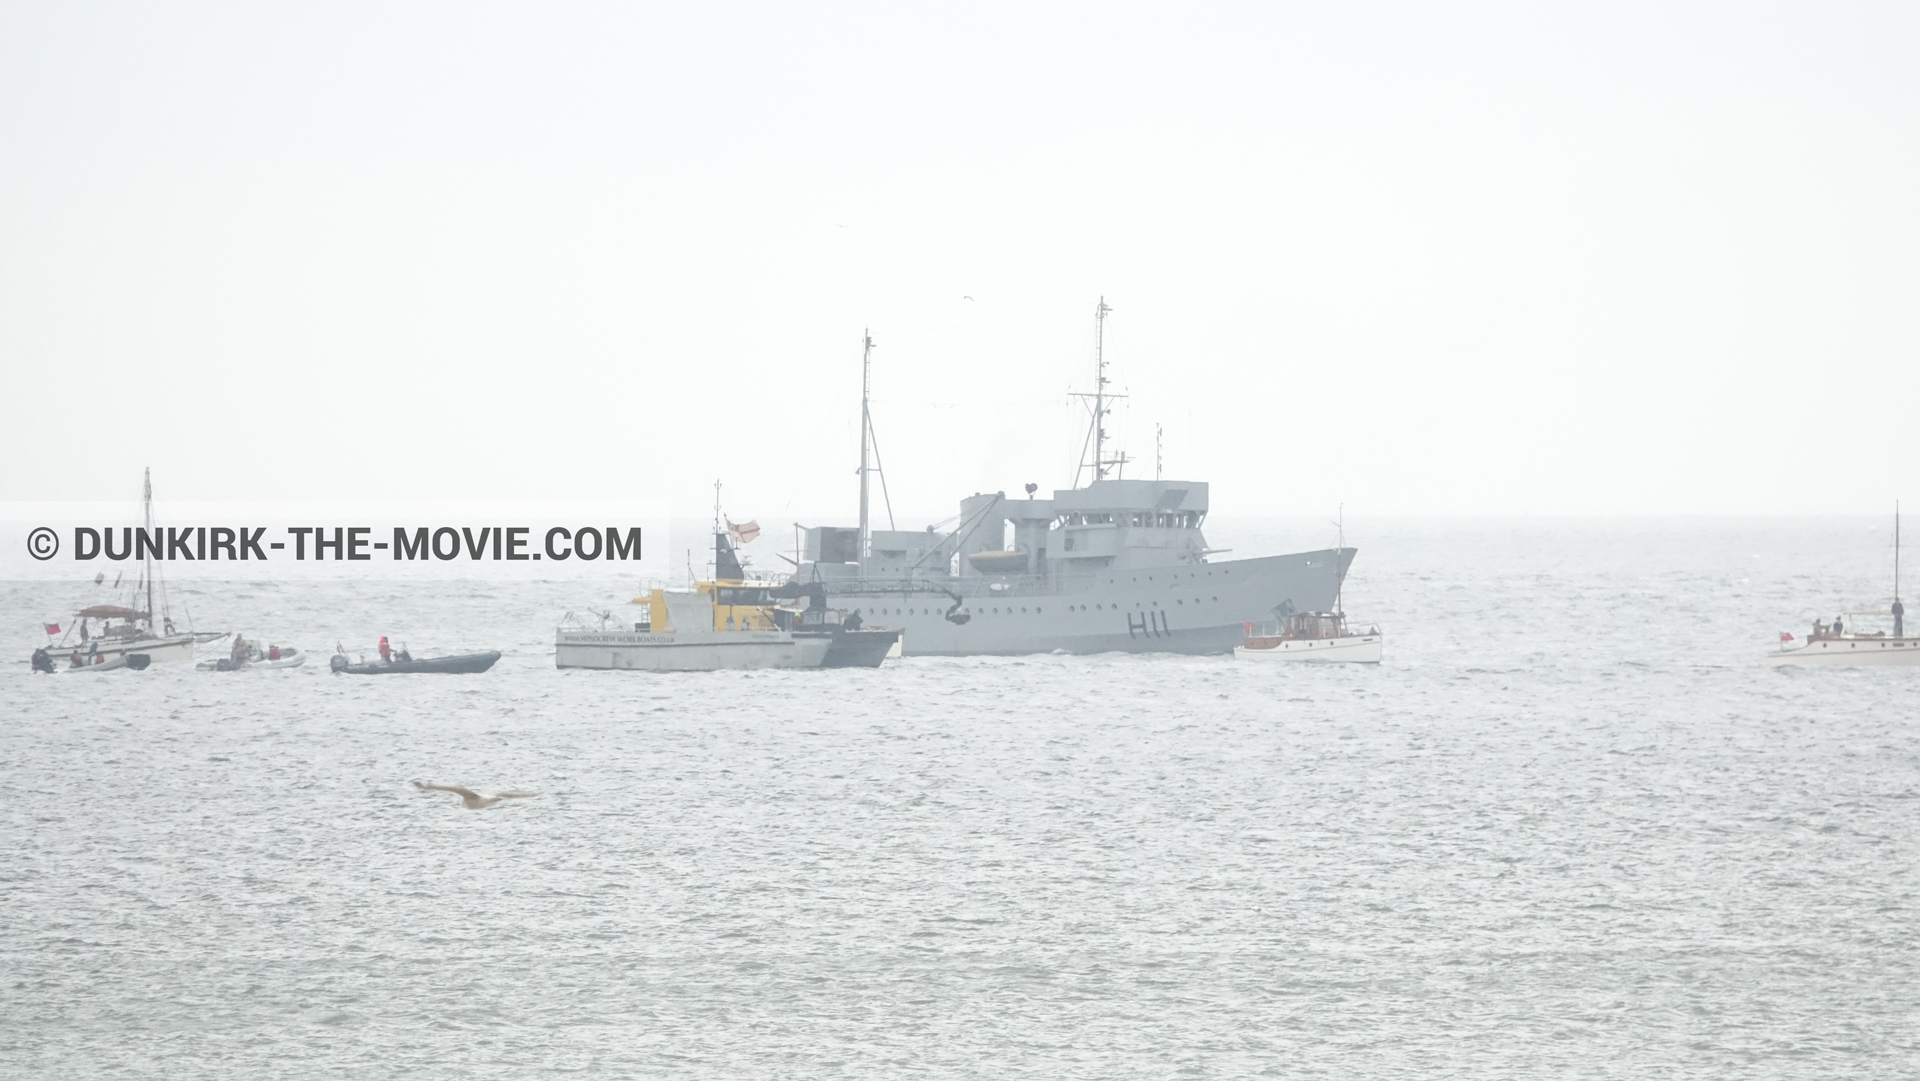 Photo avec bateau, H11 - MLV Castor, Ocean Wind 4,  des dessous du Film Dunkerque de Nolan